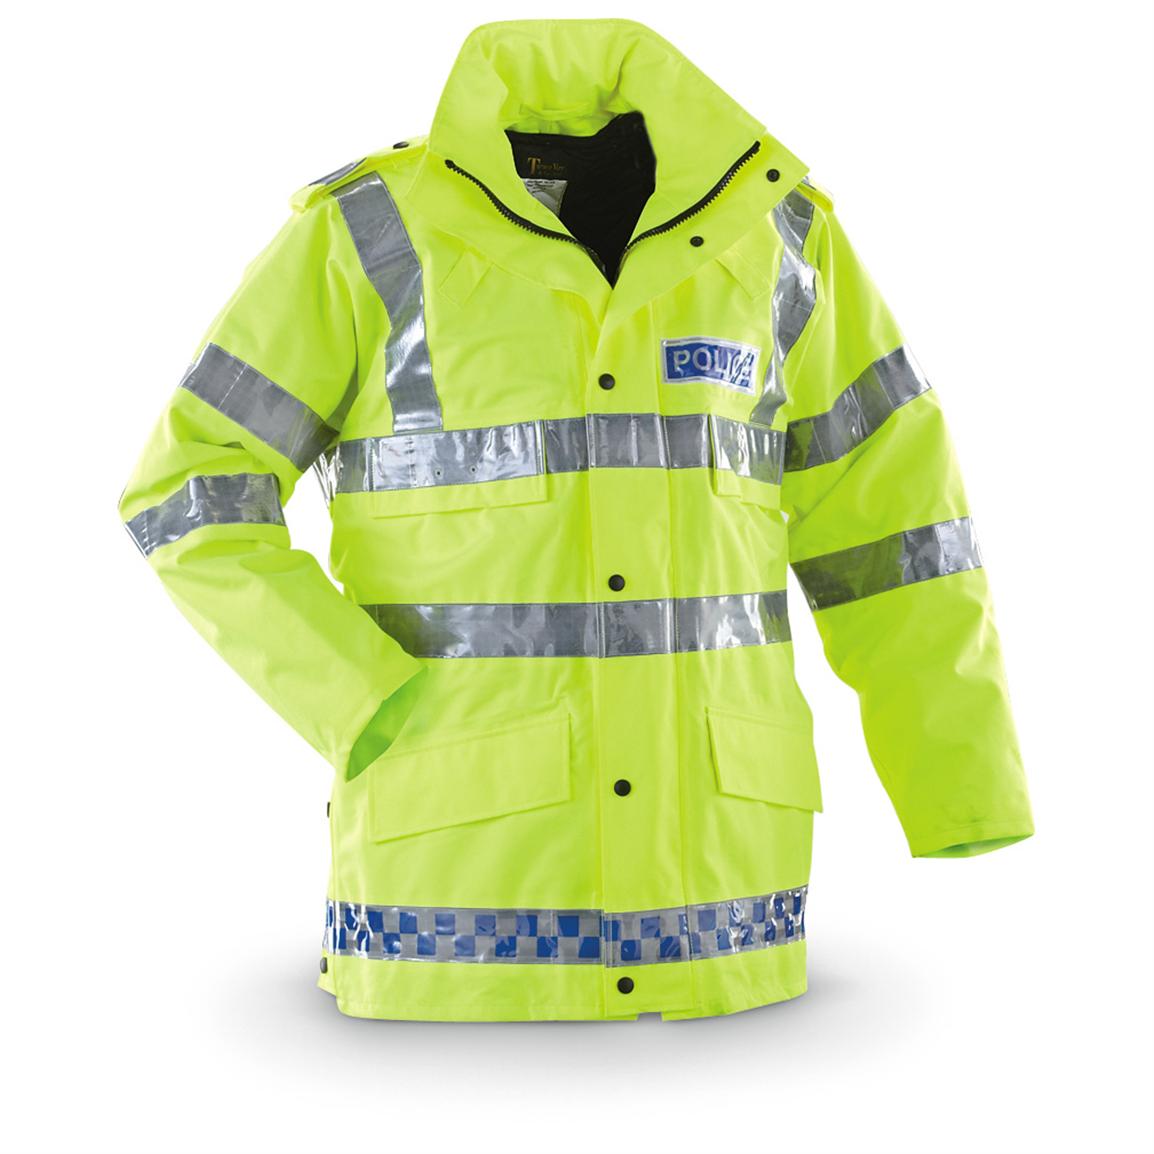 Ex Police Hi Vis Waterproof Jacket Coat Yaffy Security Vehicle Patrol Duty Work